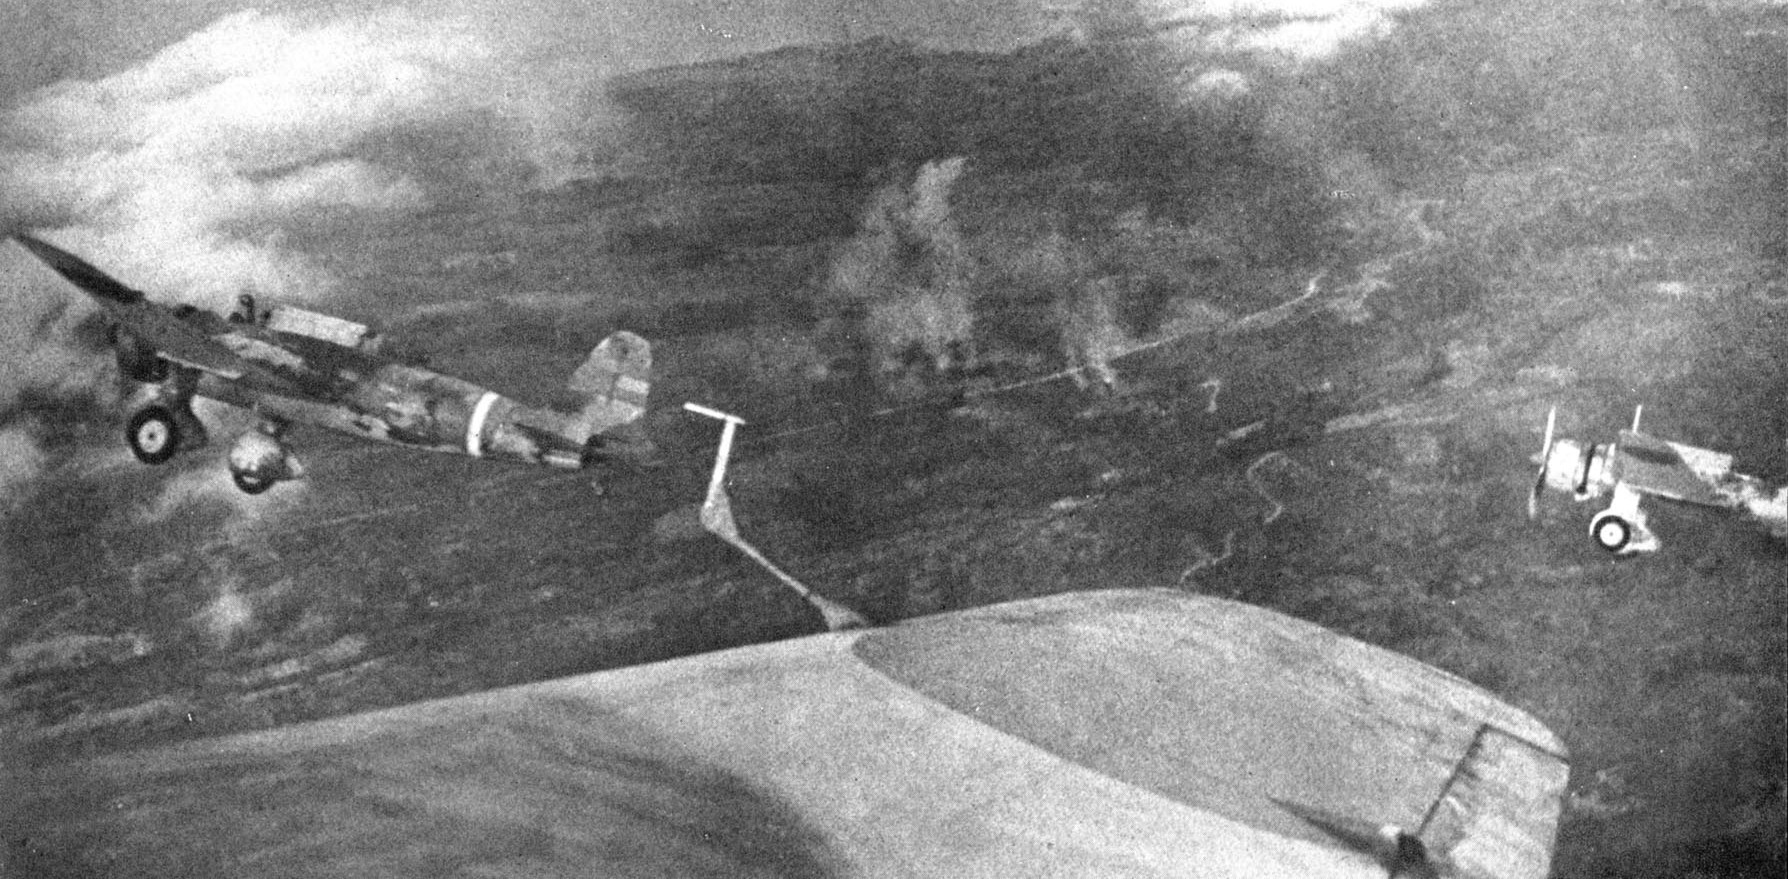 Mitsubishi Ki-30s over Bataan, 1942